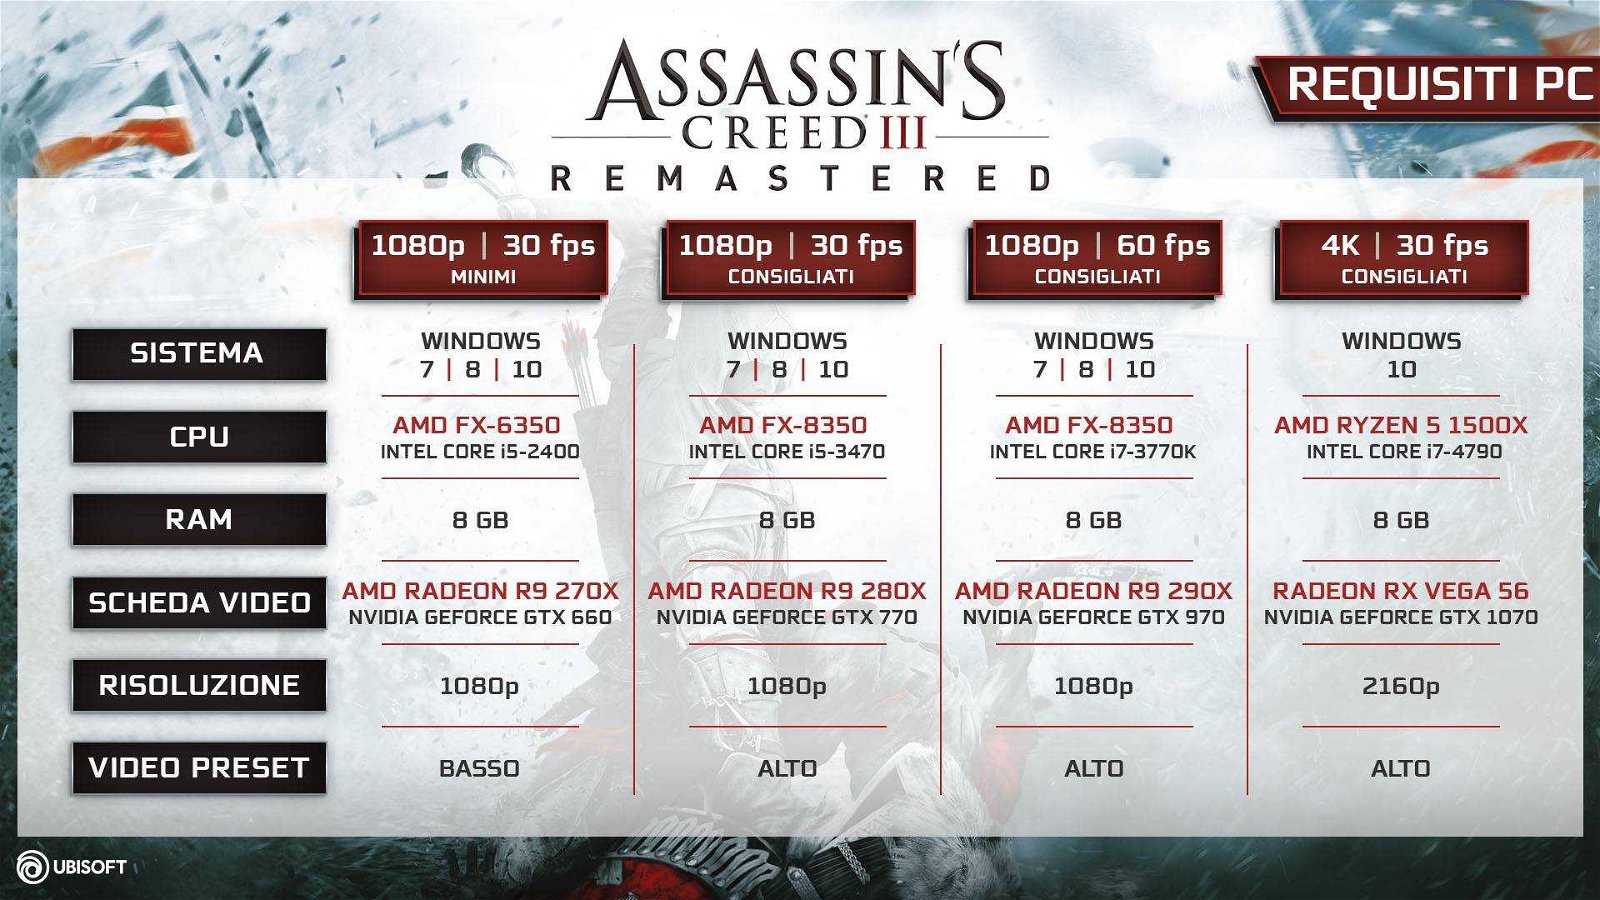 Assassin’s Creed III Remastered, i requisiti di sistema su PC